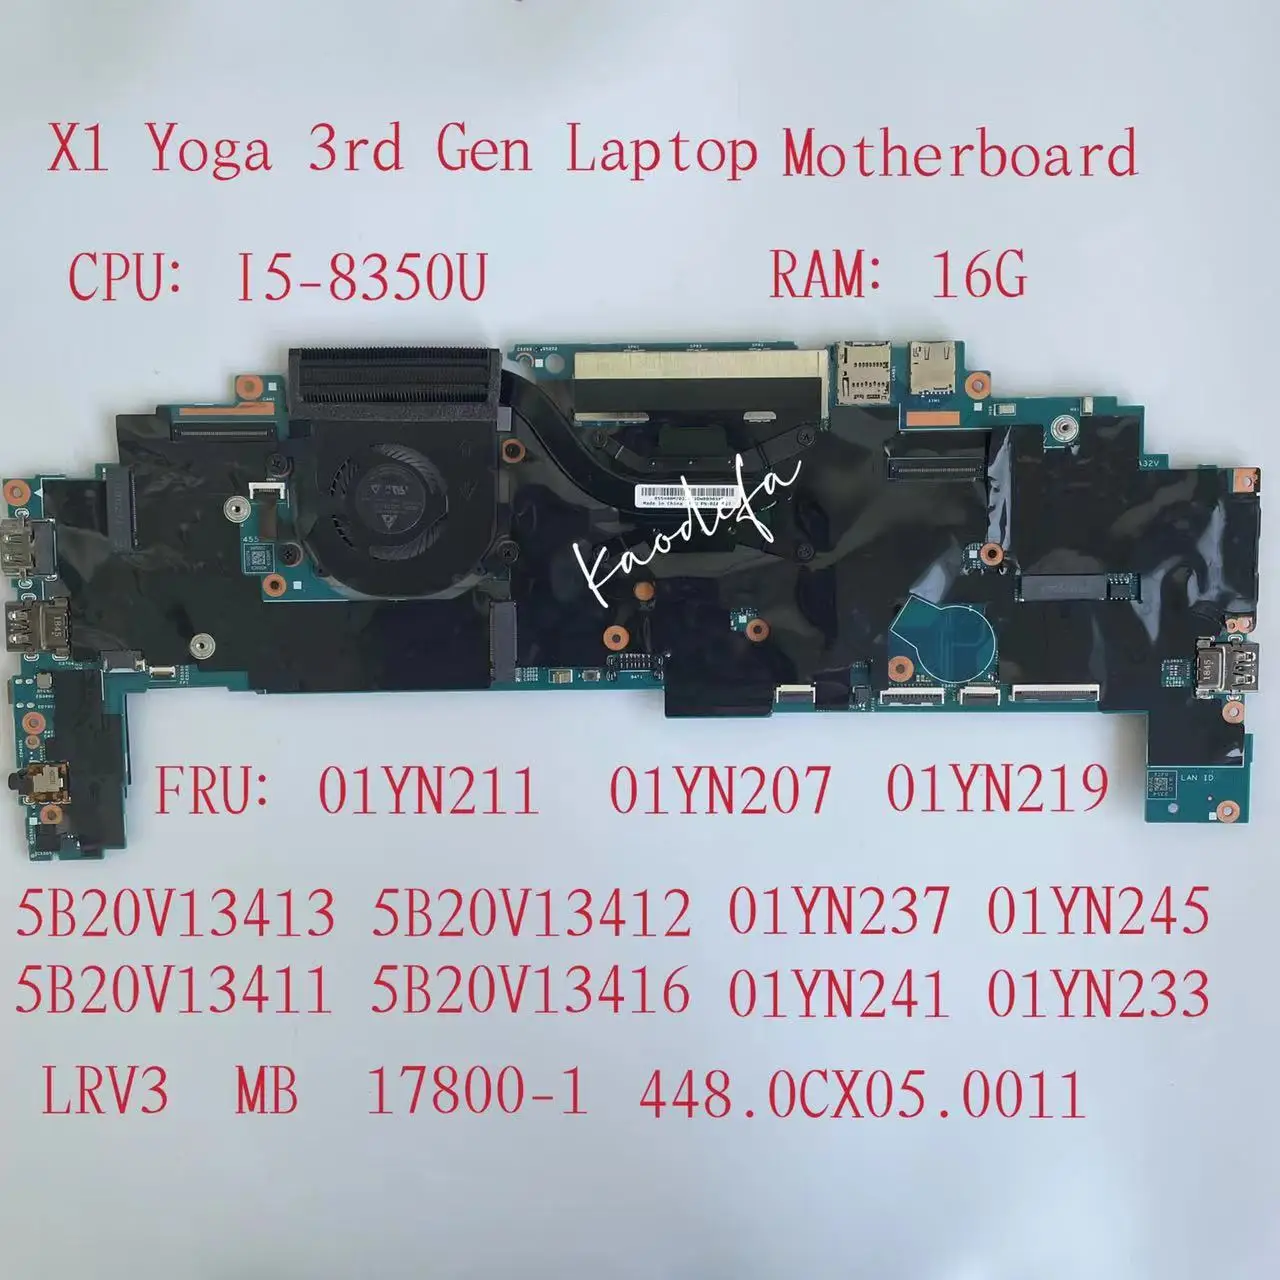 

for Thinkpad X1 Yoga 3rd Gen Laptop Motherboard CPU:I5-8350U RAM:16G LRV3 MB 17800-1 FRU:01YN211 01YN207 01YN219 01YN241 01YN233